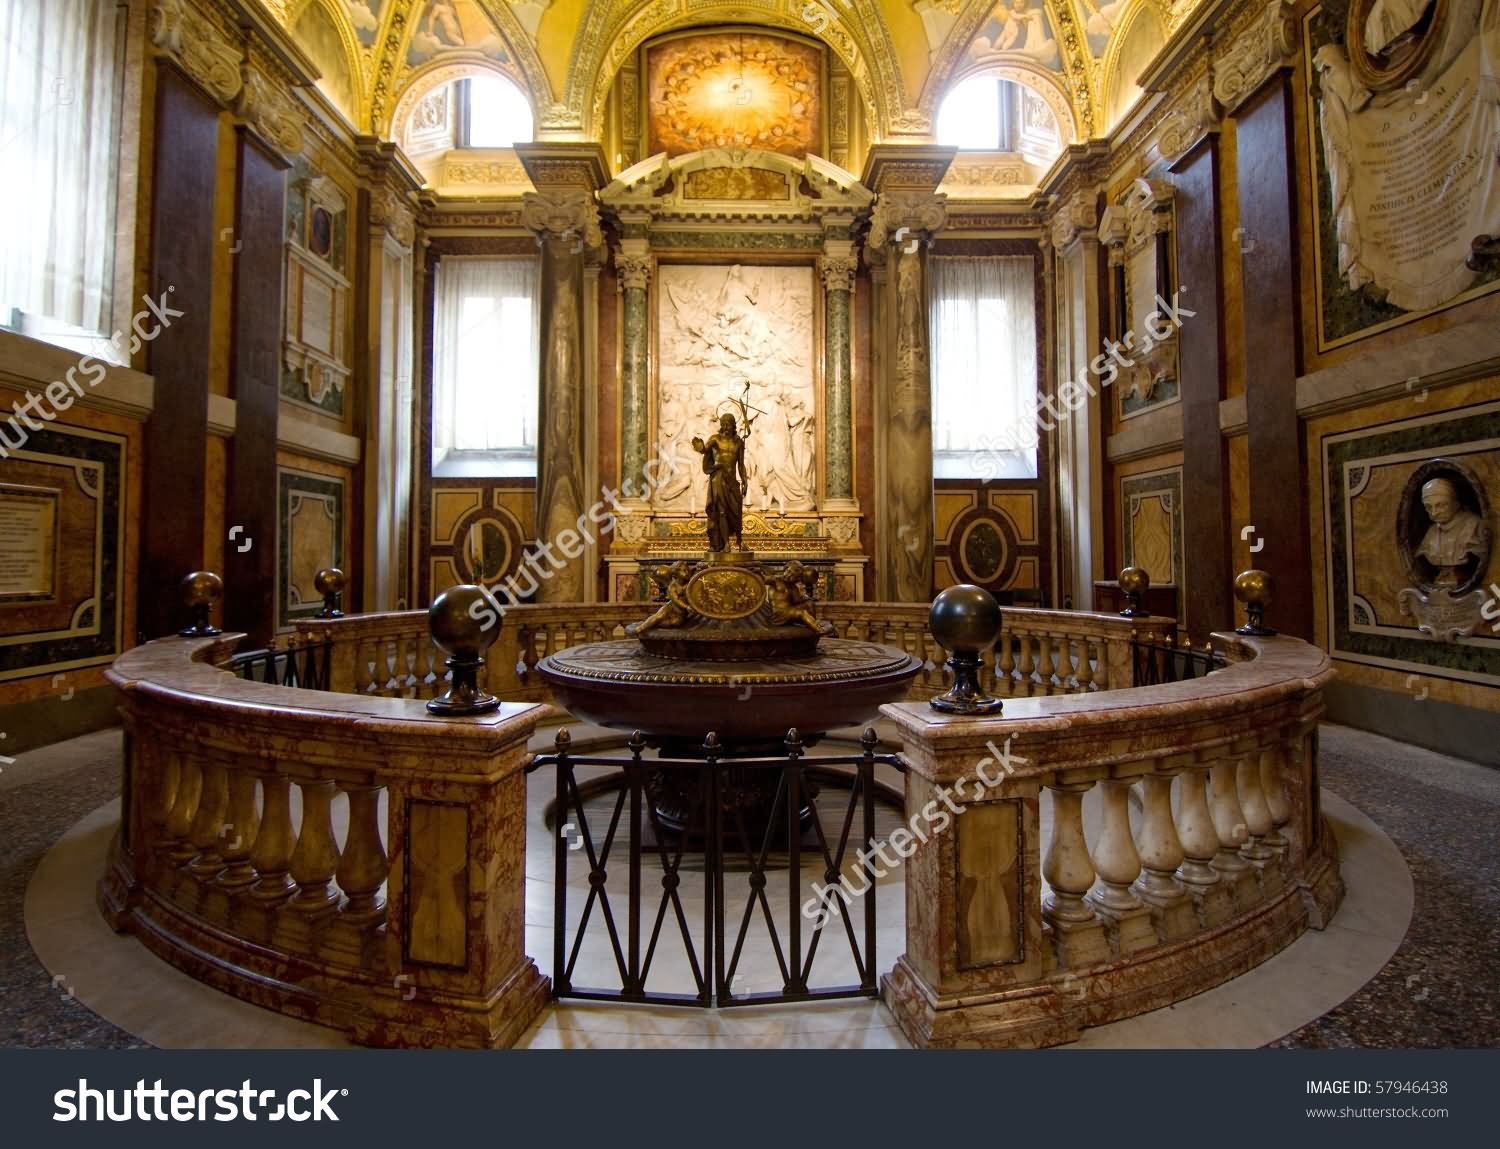 Adorable Basilica di Santa Maria Maggiore Inside Picture